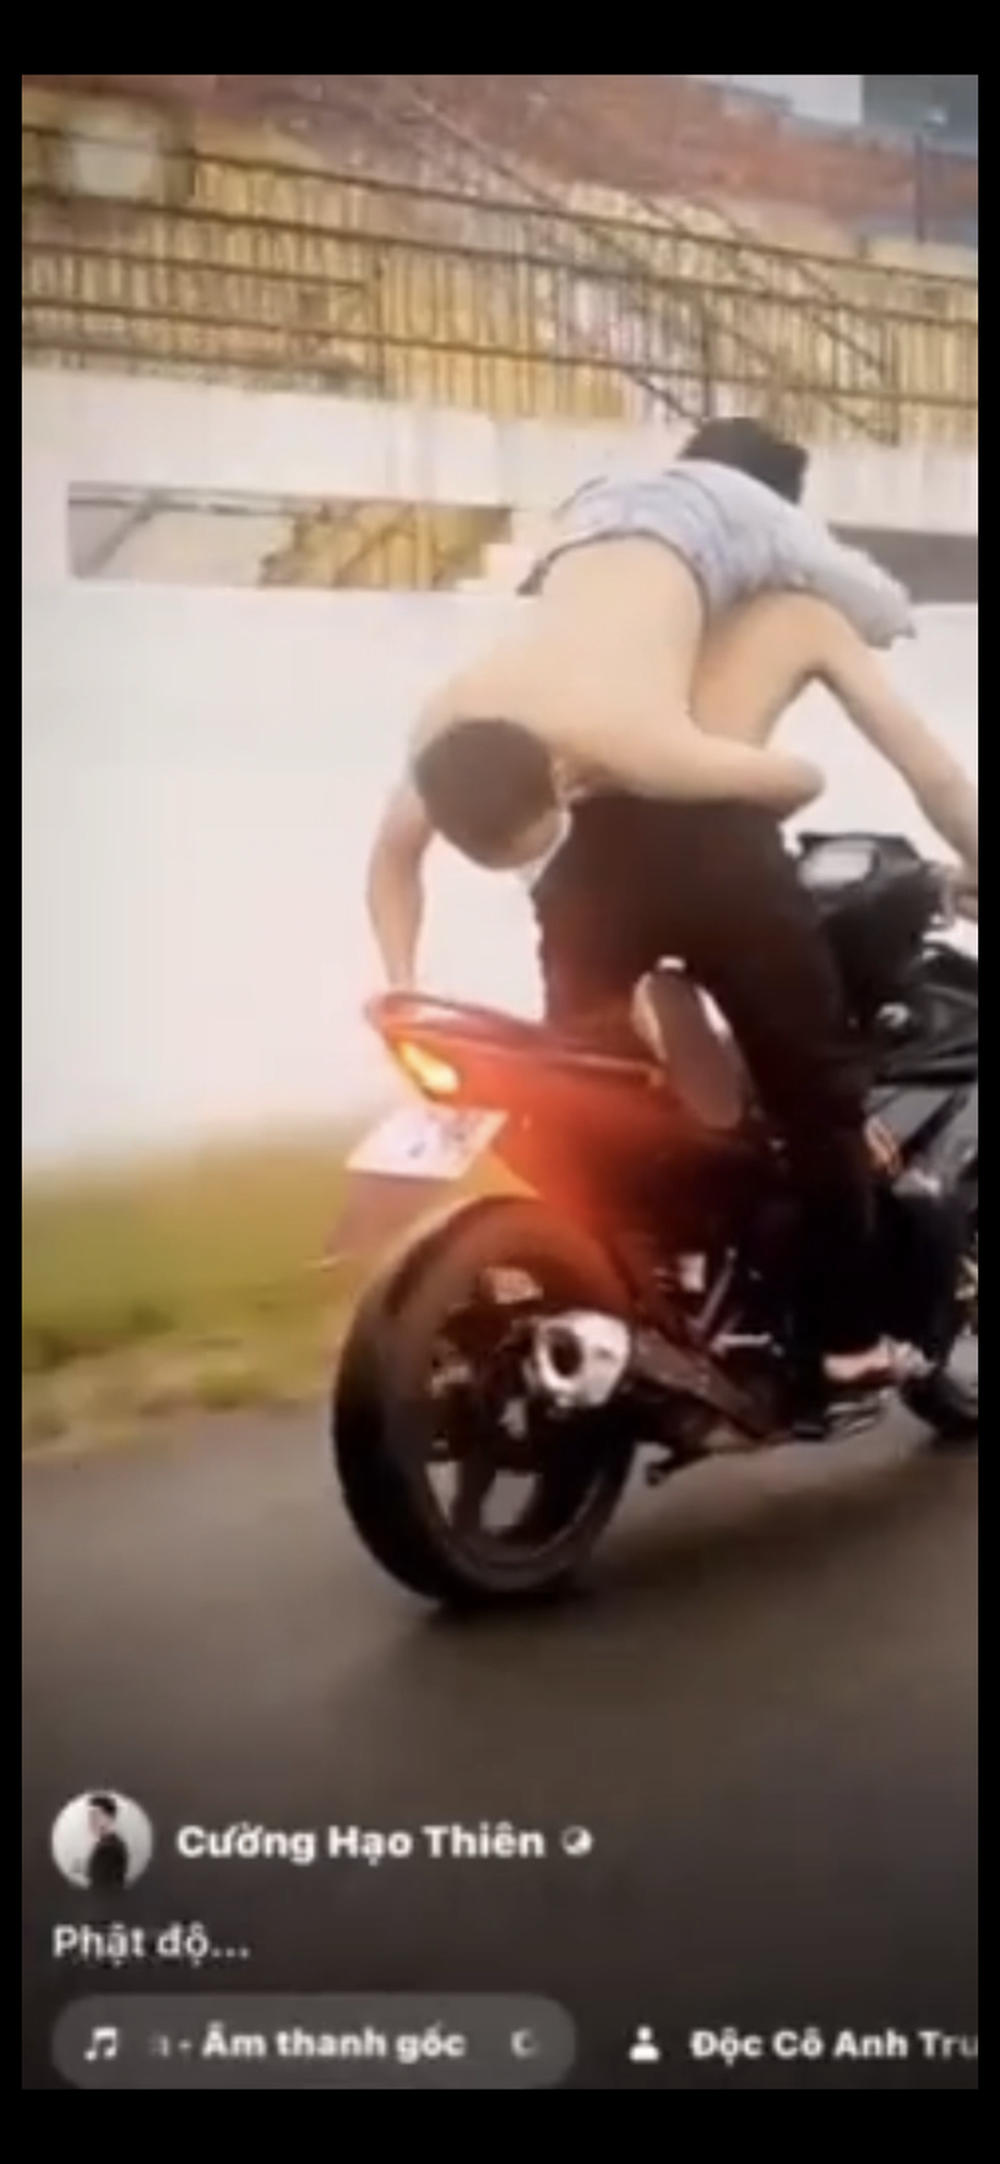 Xôn xao clip nhóm thanh niên “tạo dáng” nguy hiểm trên xe máy ở TP HCM - Ảnh 2.